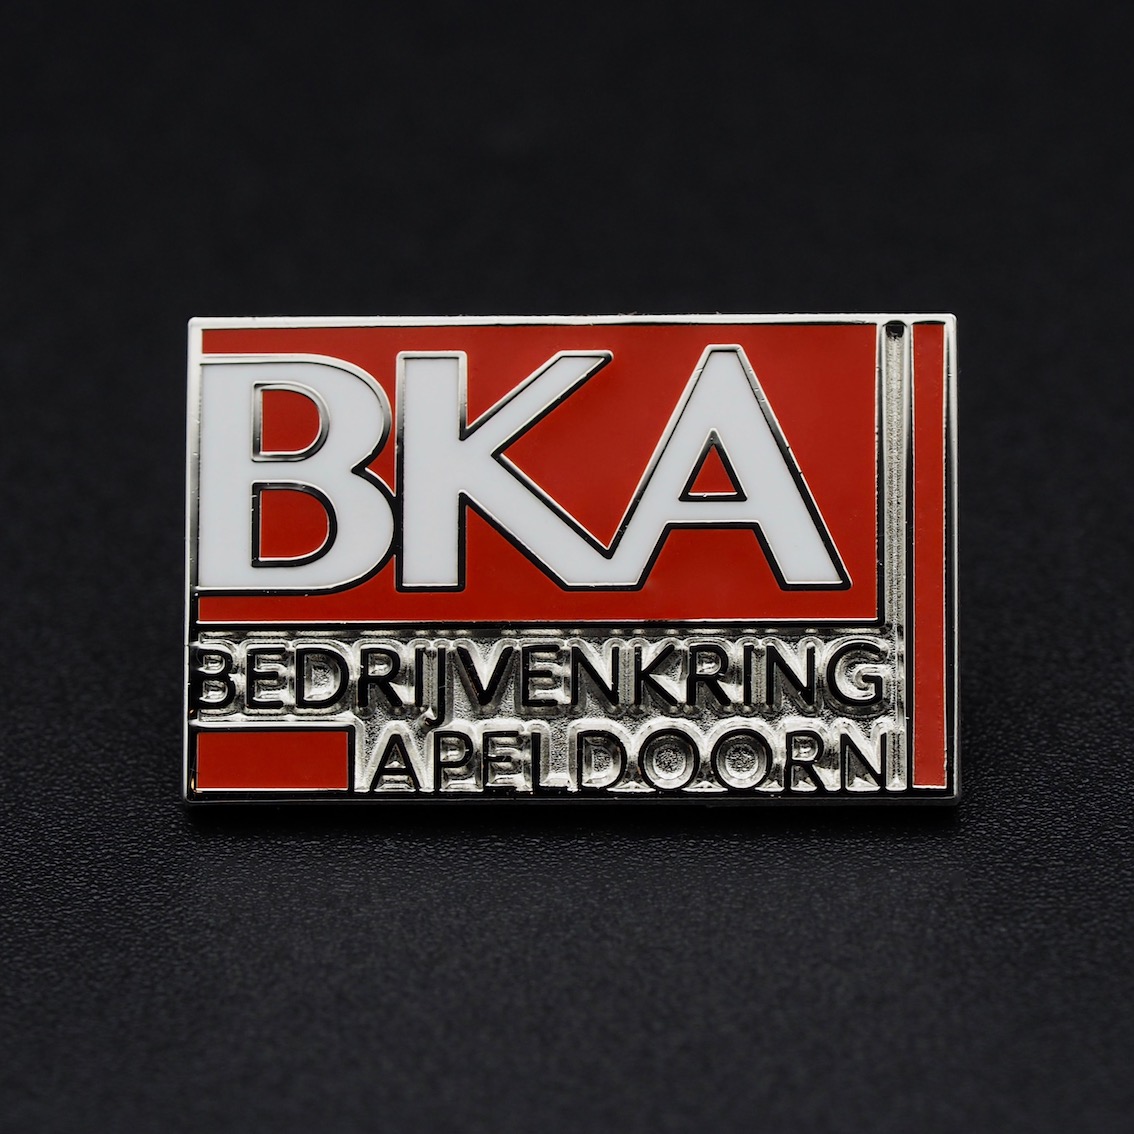 BKA, Bedrijven Kring Apeldoorn 